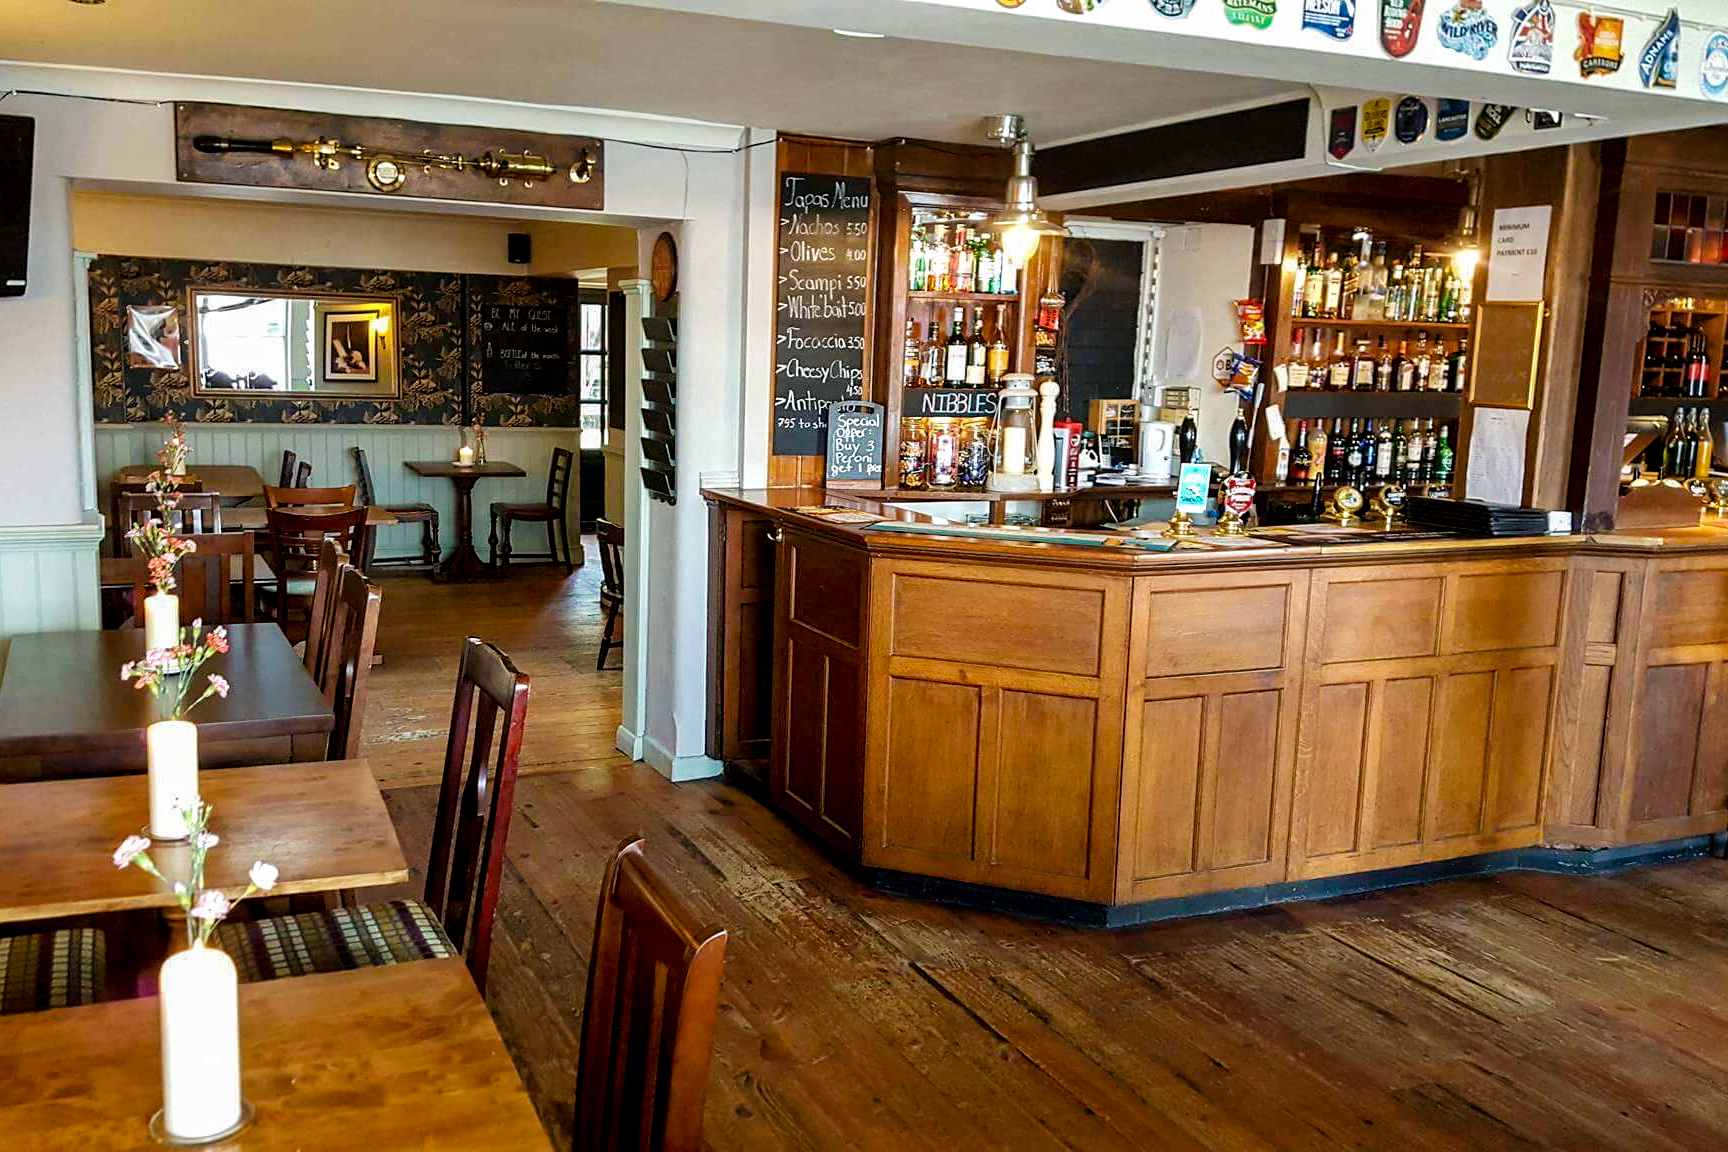 The Marsh Harrier bar